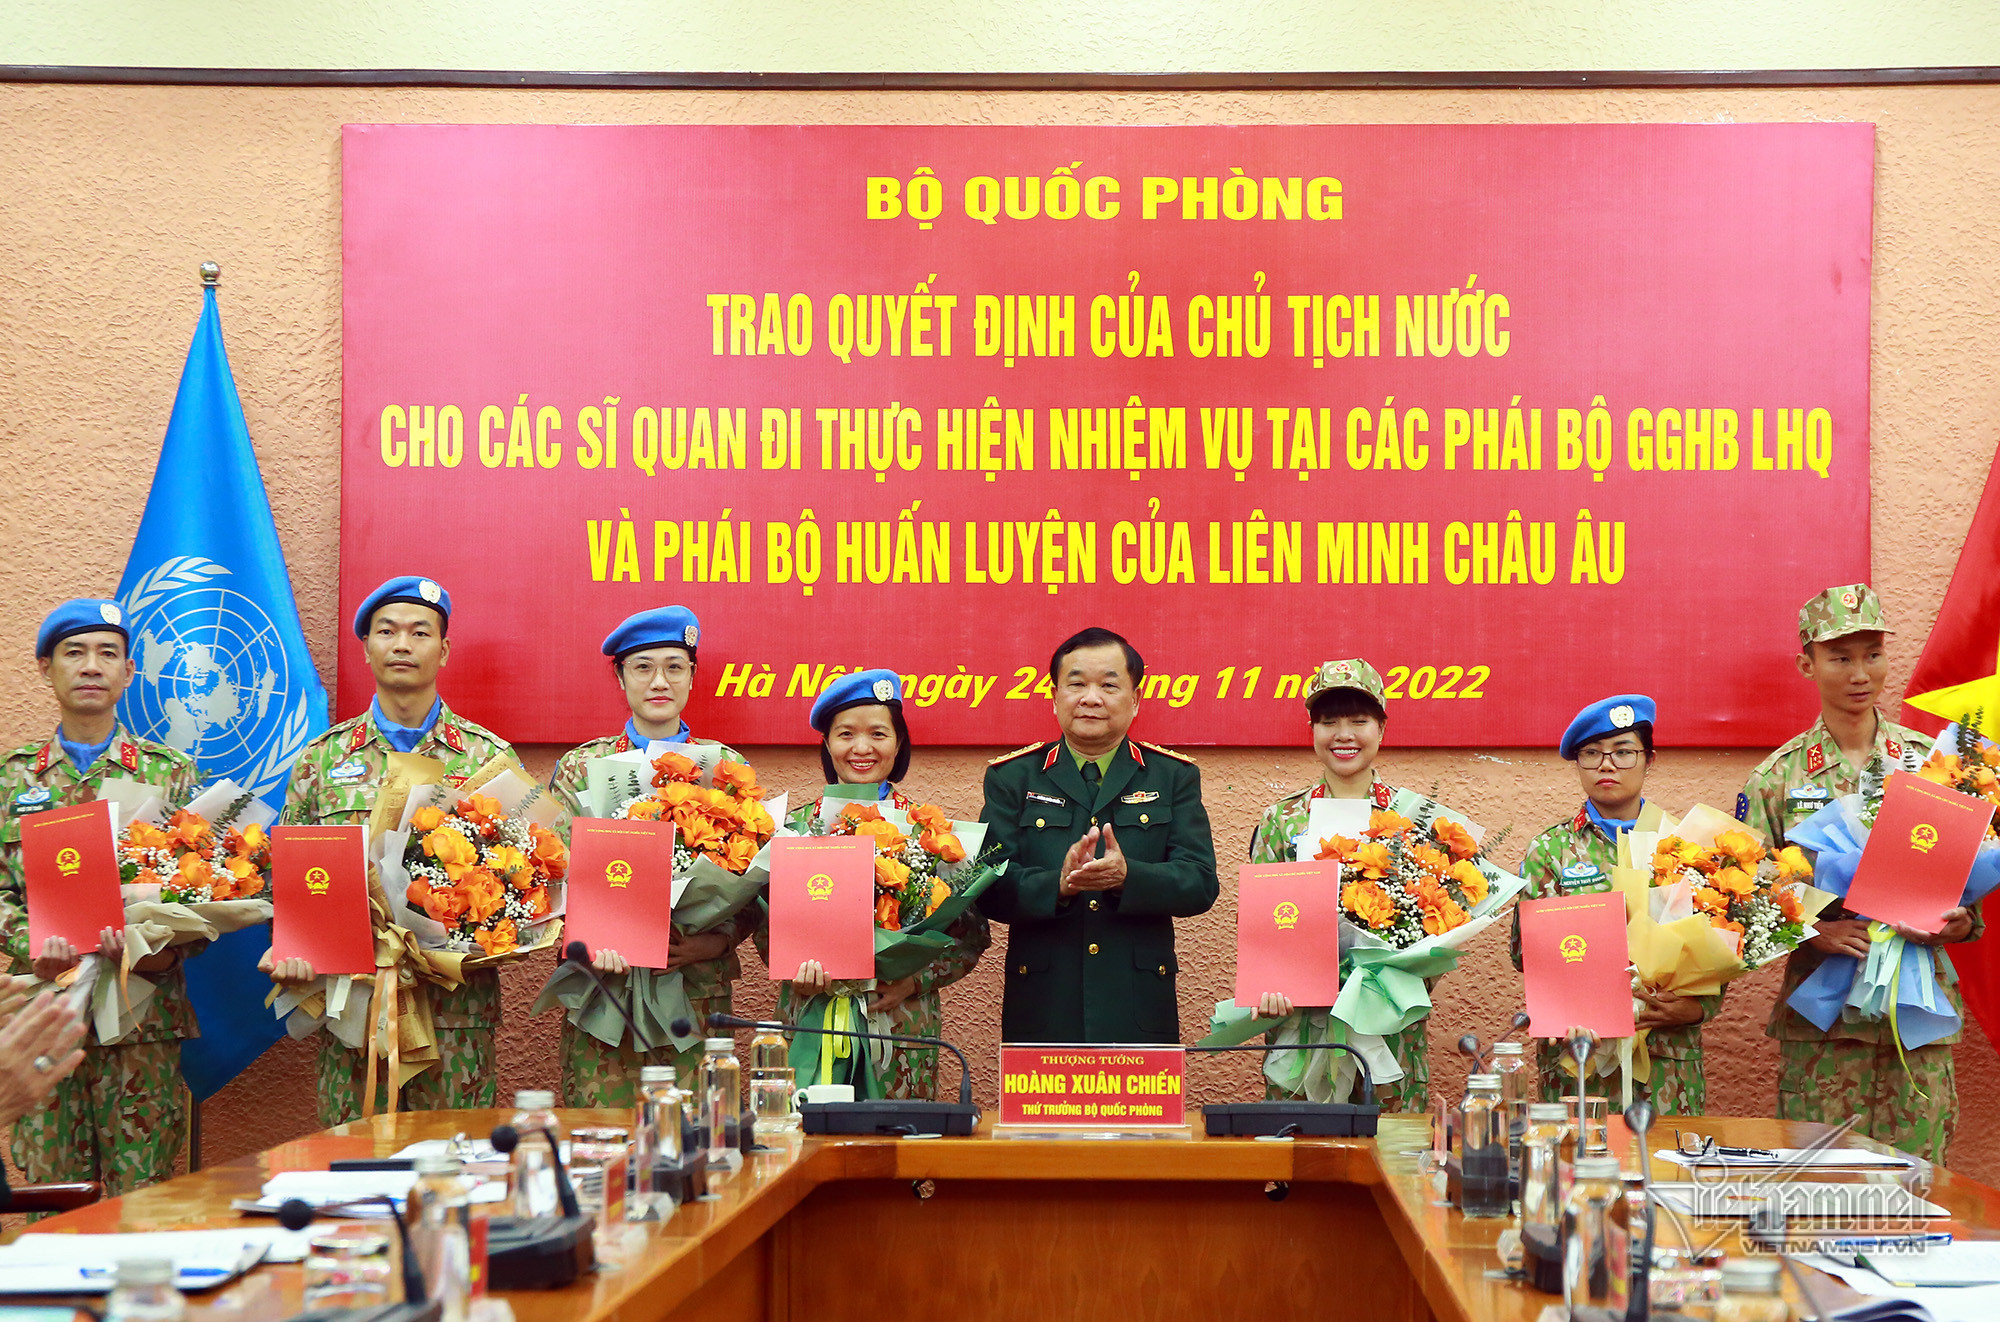 Lần đầu Việt Nam cử sĩ quan gìn giữ hòa bình tại phái bộ huấn luyện Liên minh châu Âu